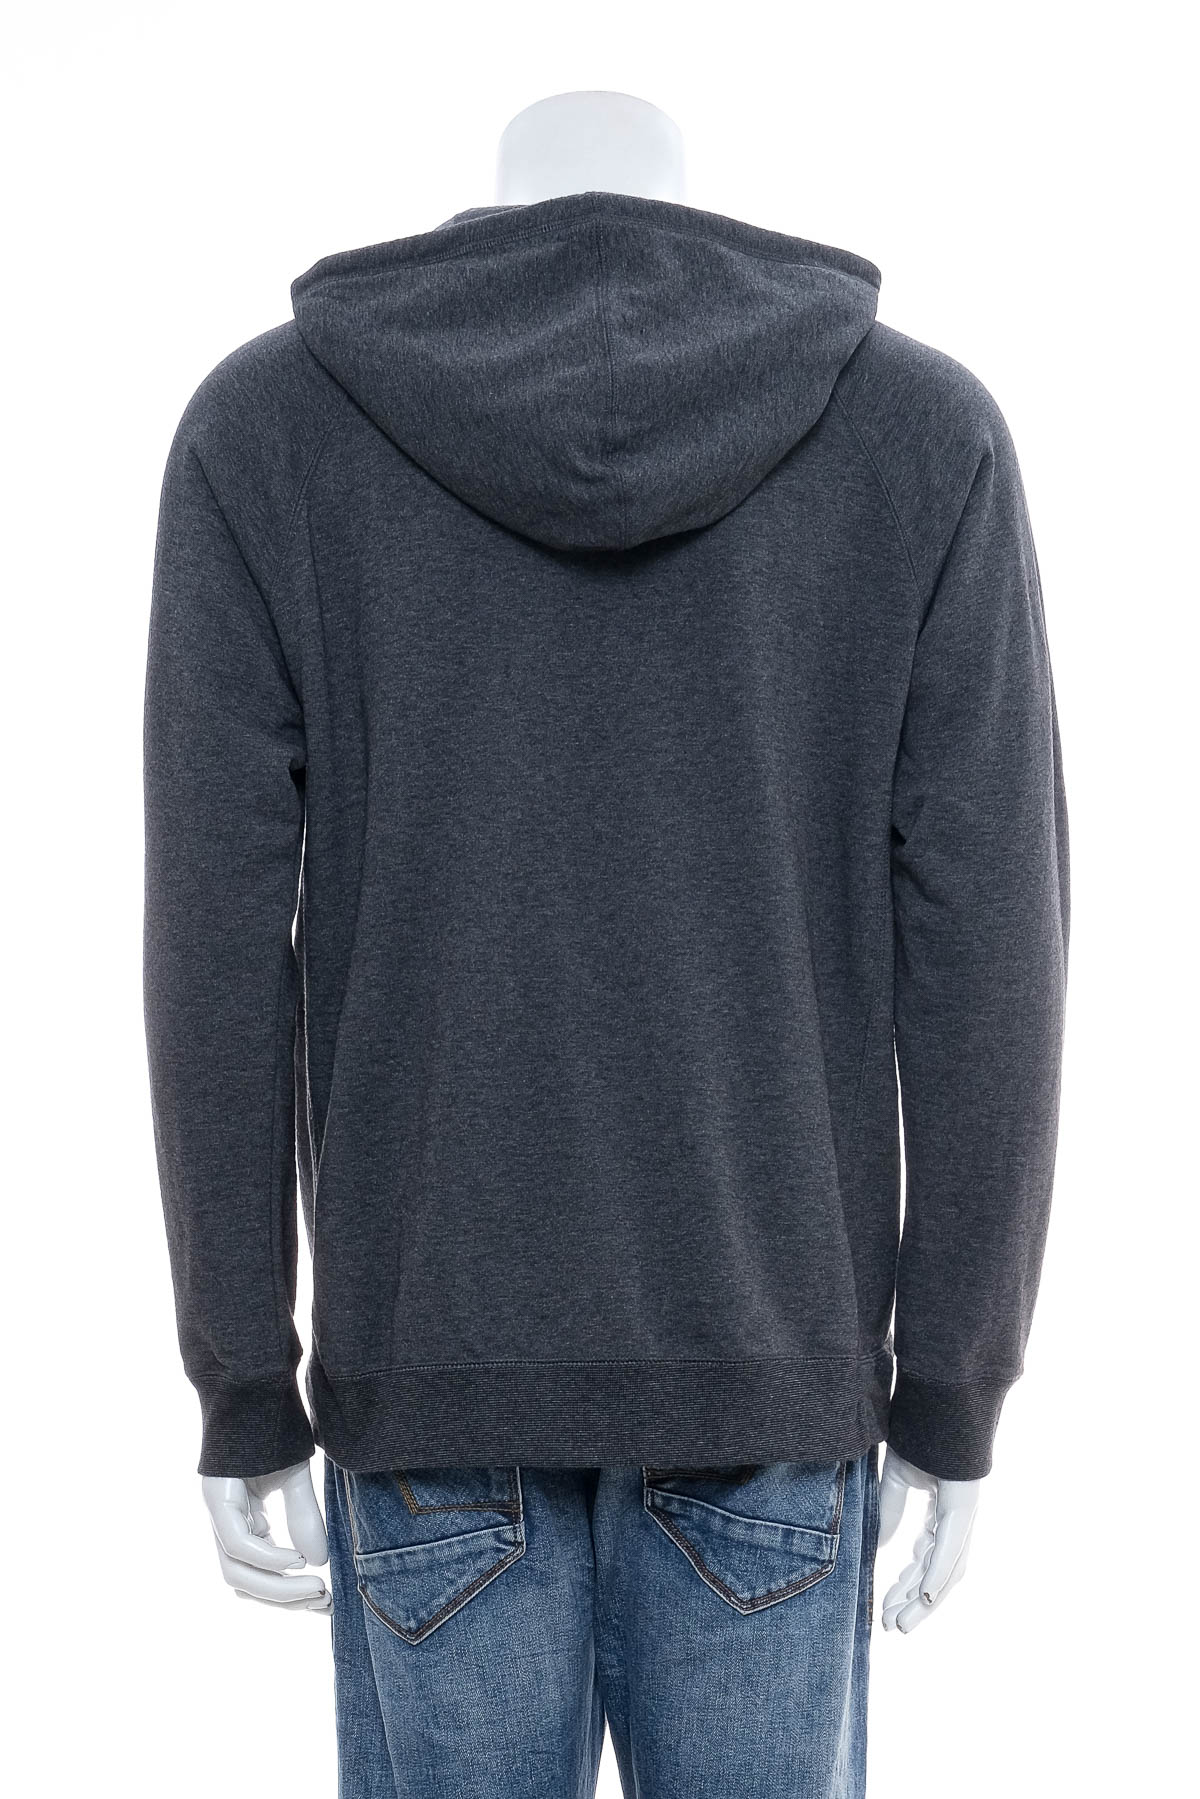 Men's sweatshirt - Adidas - 1